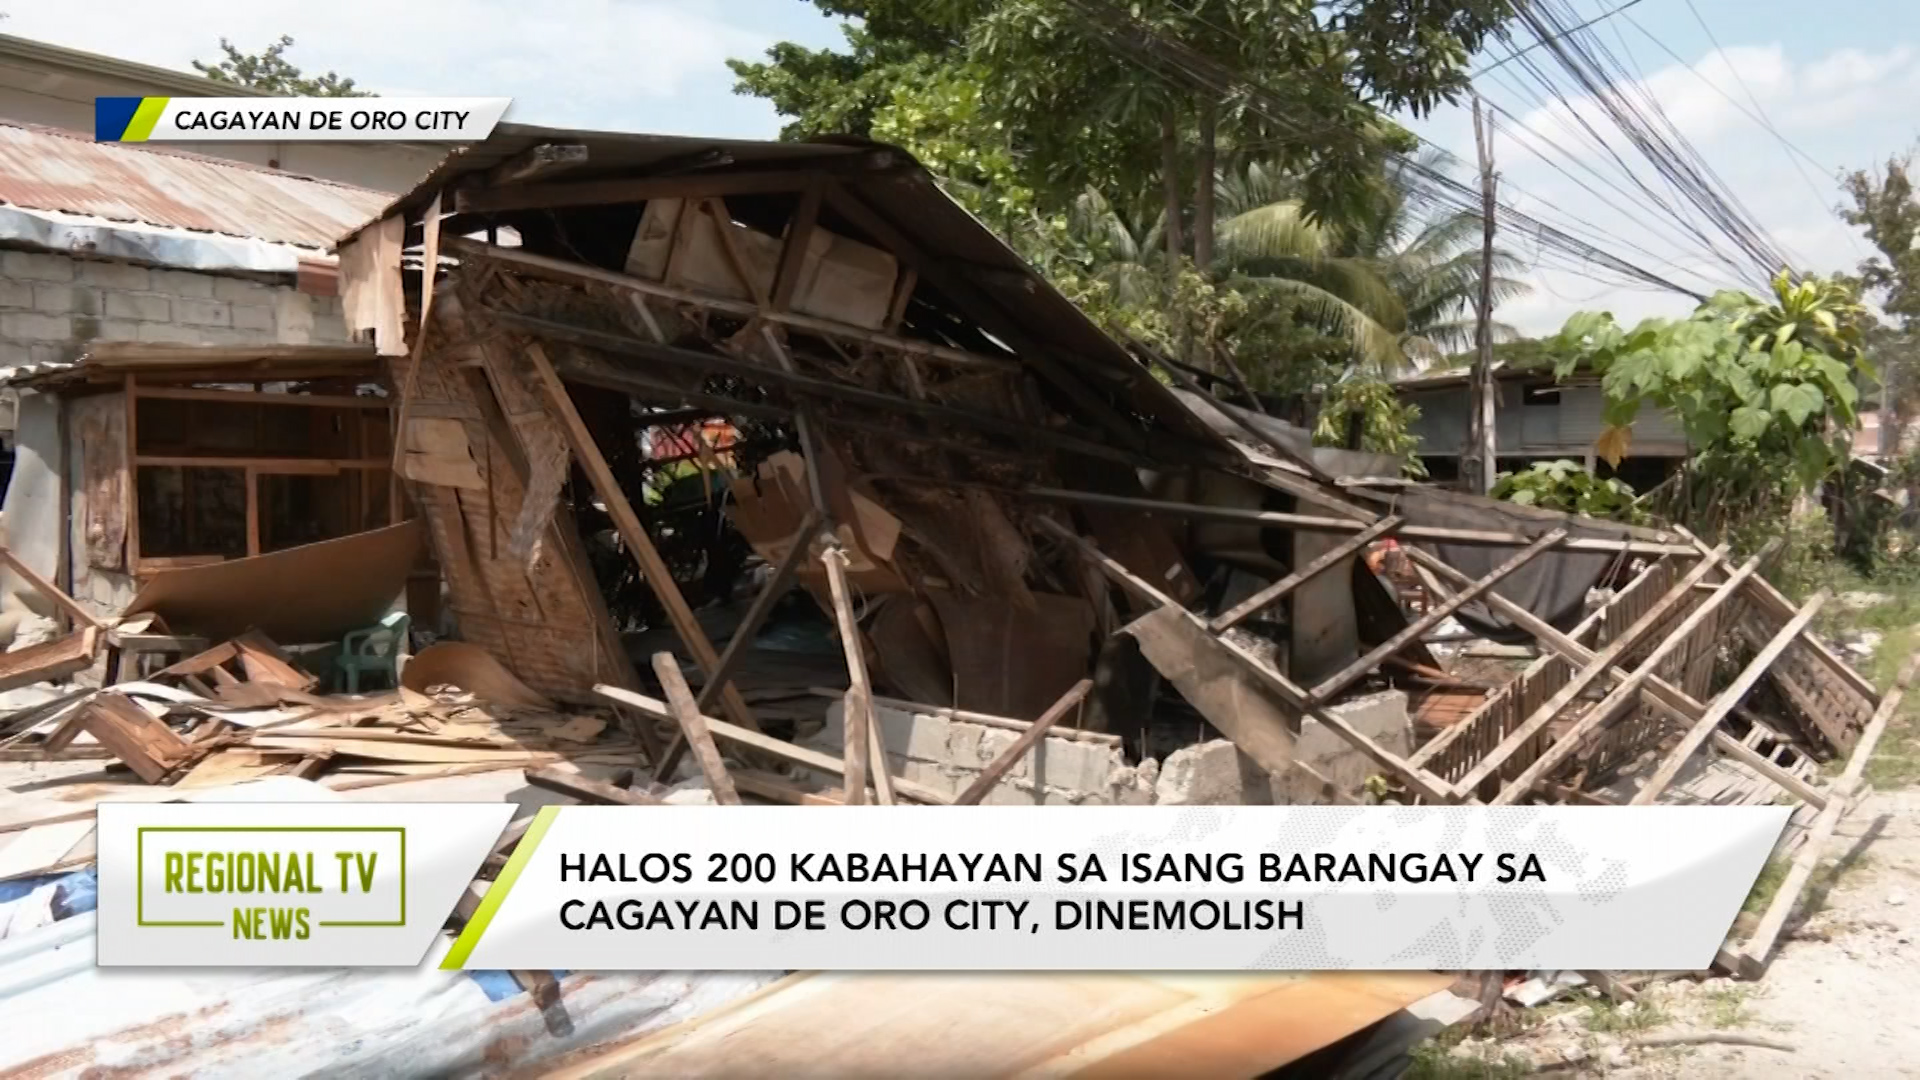 Halos 200 kabahayan sa isang barangay sa Cagayan De Oro City, dinemolish